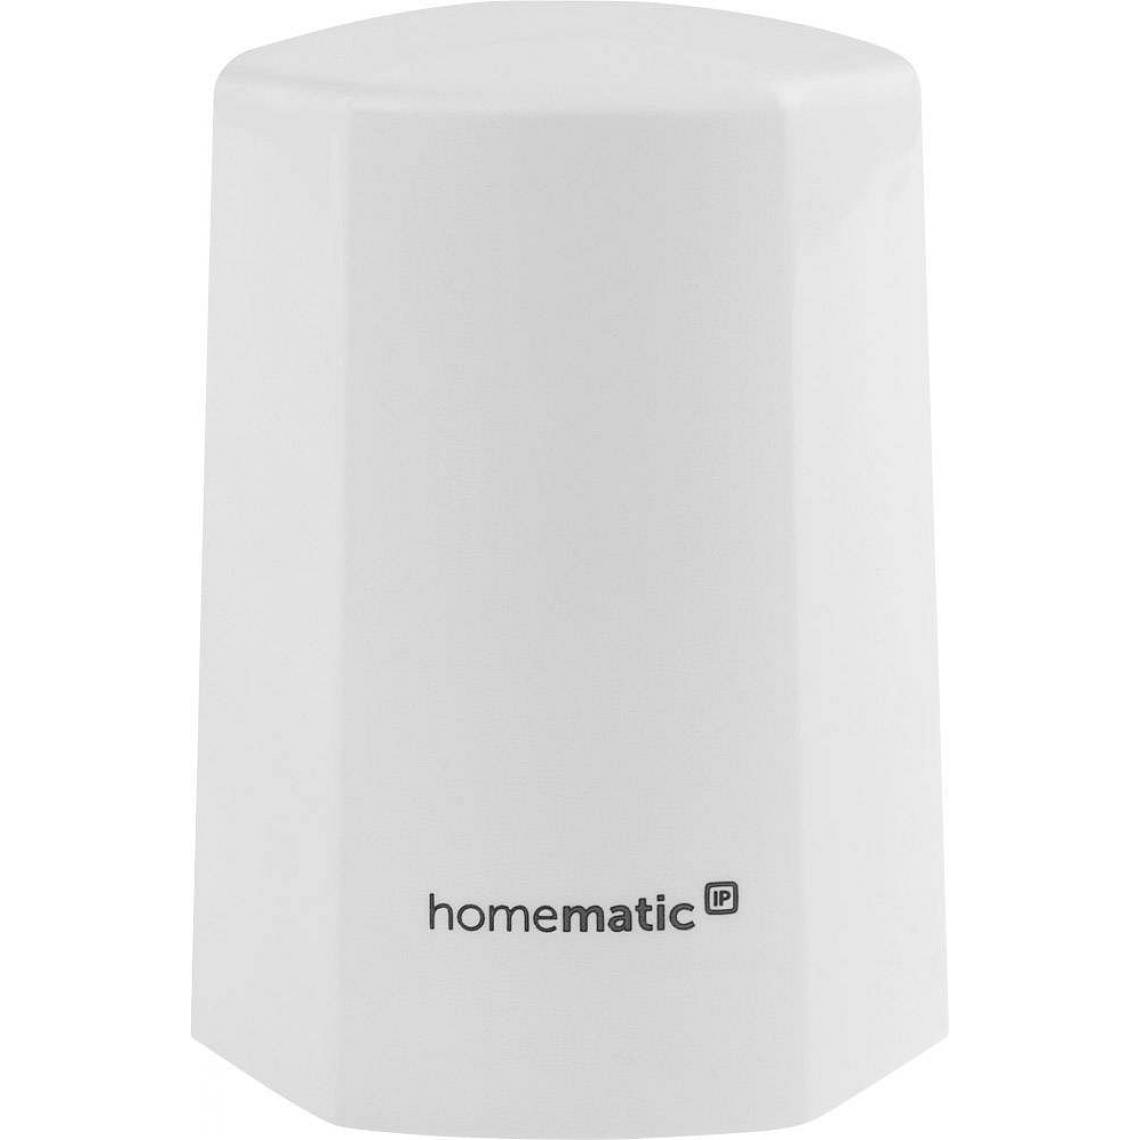 Homematic Ip - Capteur de température et humidité extérieur - Homematic Ip - Détecteur connecté